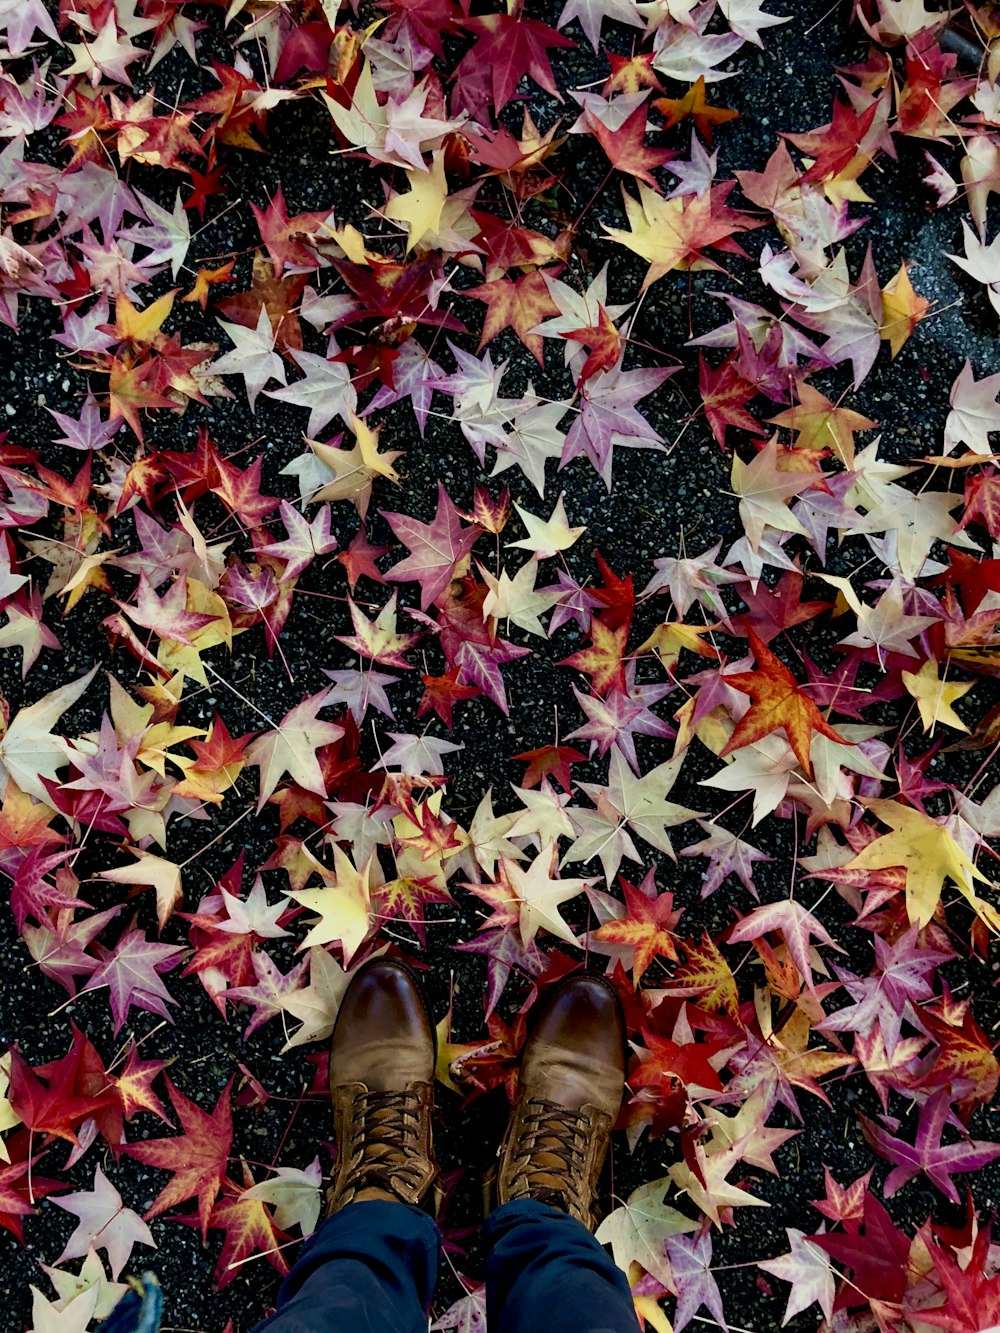 hojas de arce de color rojo, rosa y marrón sobre piso de concreto